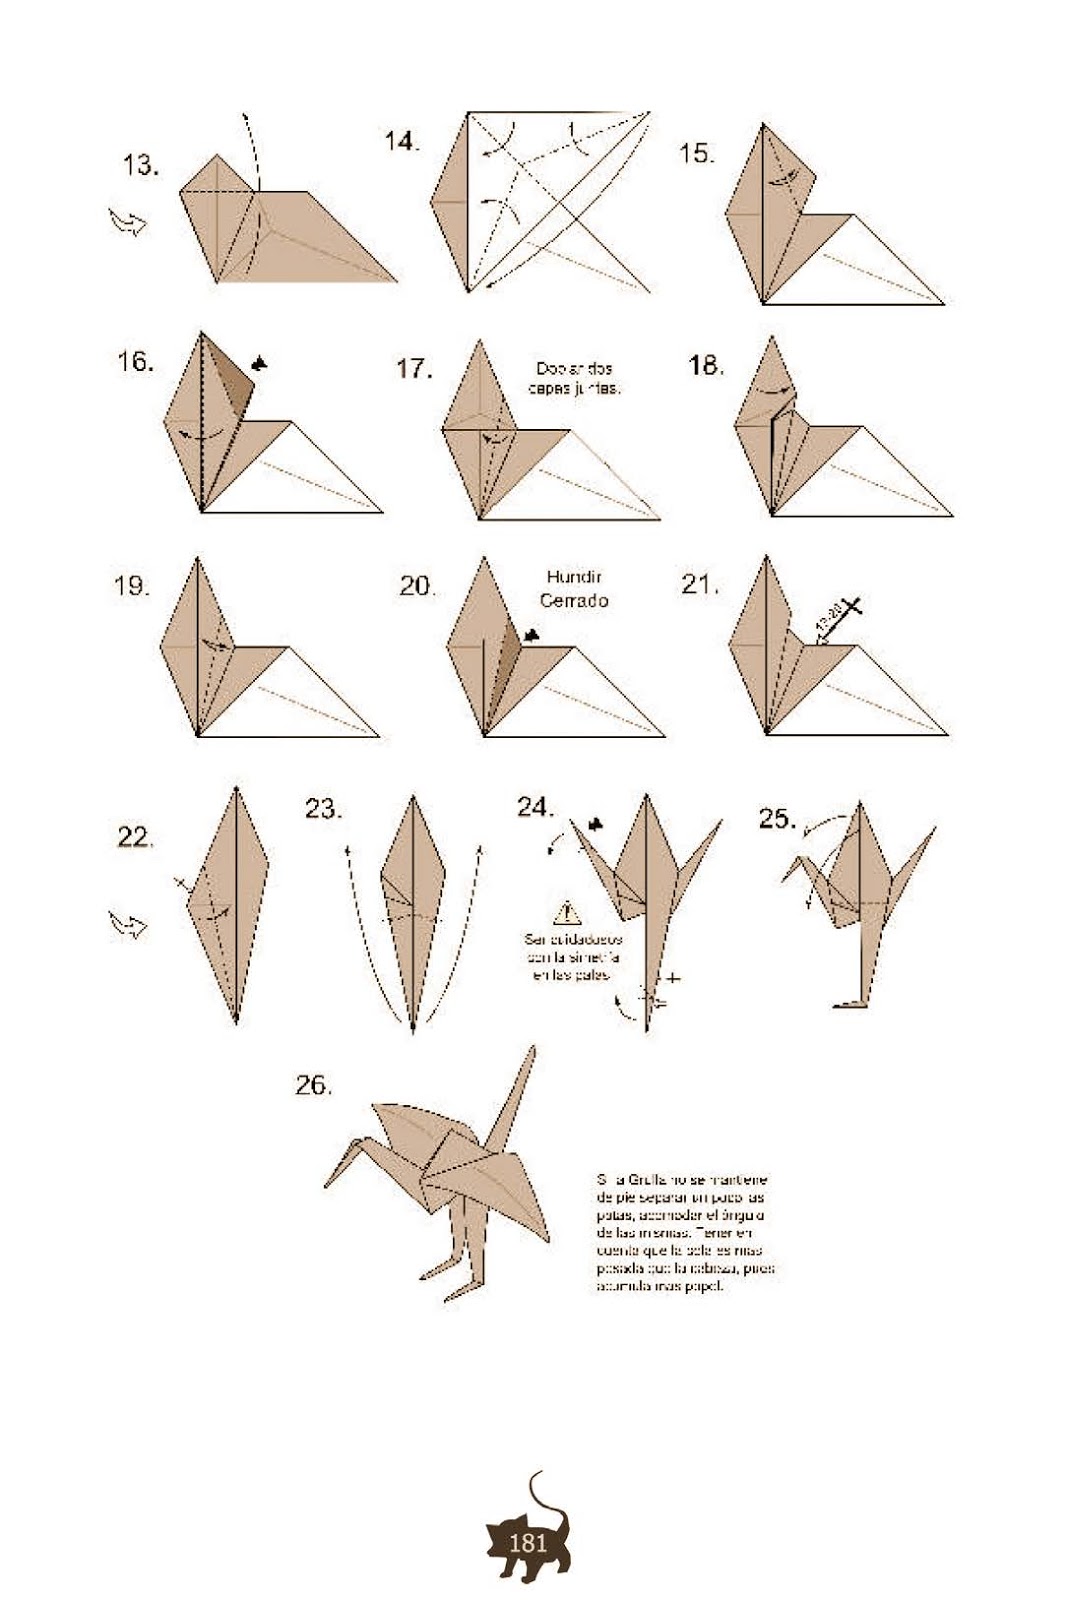 Сделать журавлика оригами пошаговая инструкция для начинающих. Журавлик из бумаги схема. Схема оригами Журавлик из бумаги. Как делать журавликов из бумаги фото. Схема сборки журавлика из бумаги.